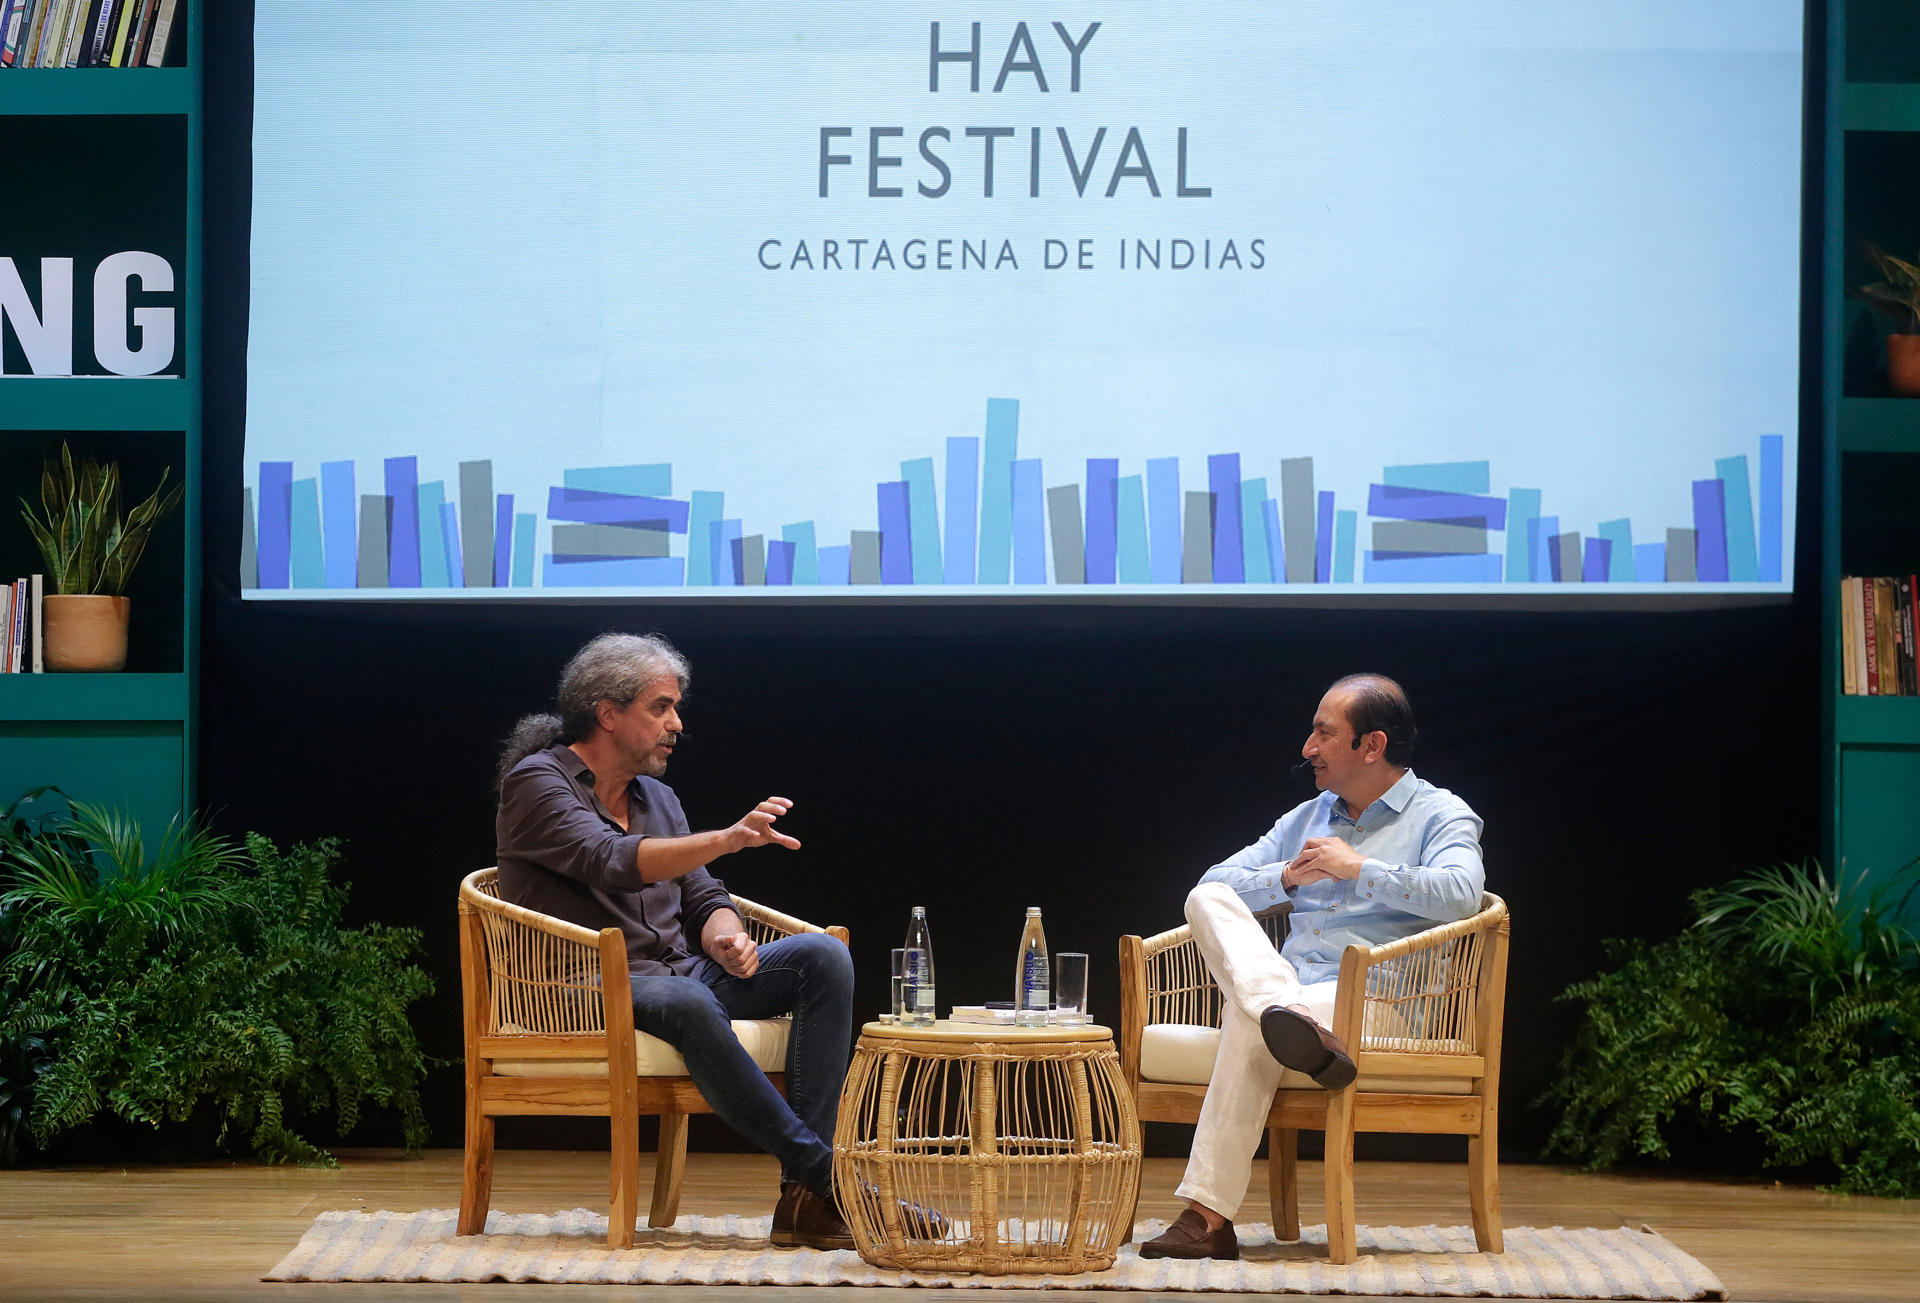 El cineasta español Fernando León de Aranoa en el Teatro Adolfo Mejía, en la jornada inaugural del Hay Festival de Cartagena de Indias, Colombia (Foto: EFE)
